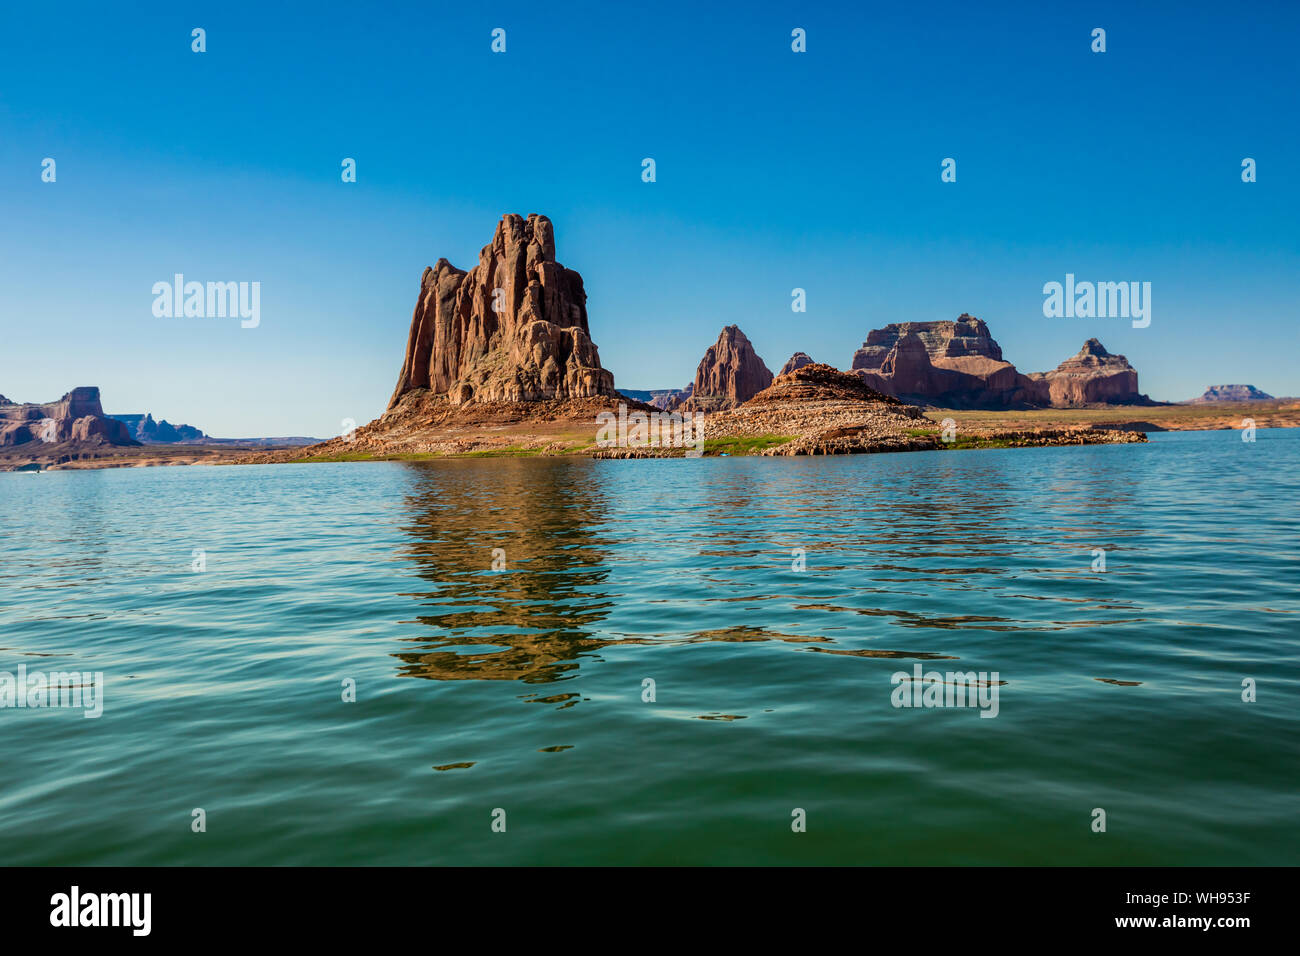 Schönen Lake Powell, Grenze von Arizona und Utah, Vereinigte Staaten von Amerika, Nordamerika Stockfoto